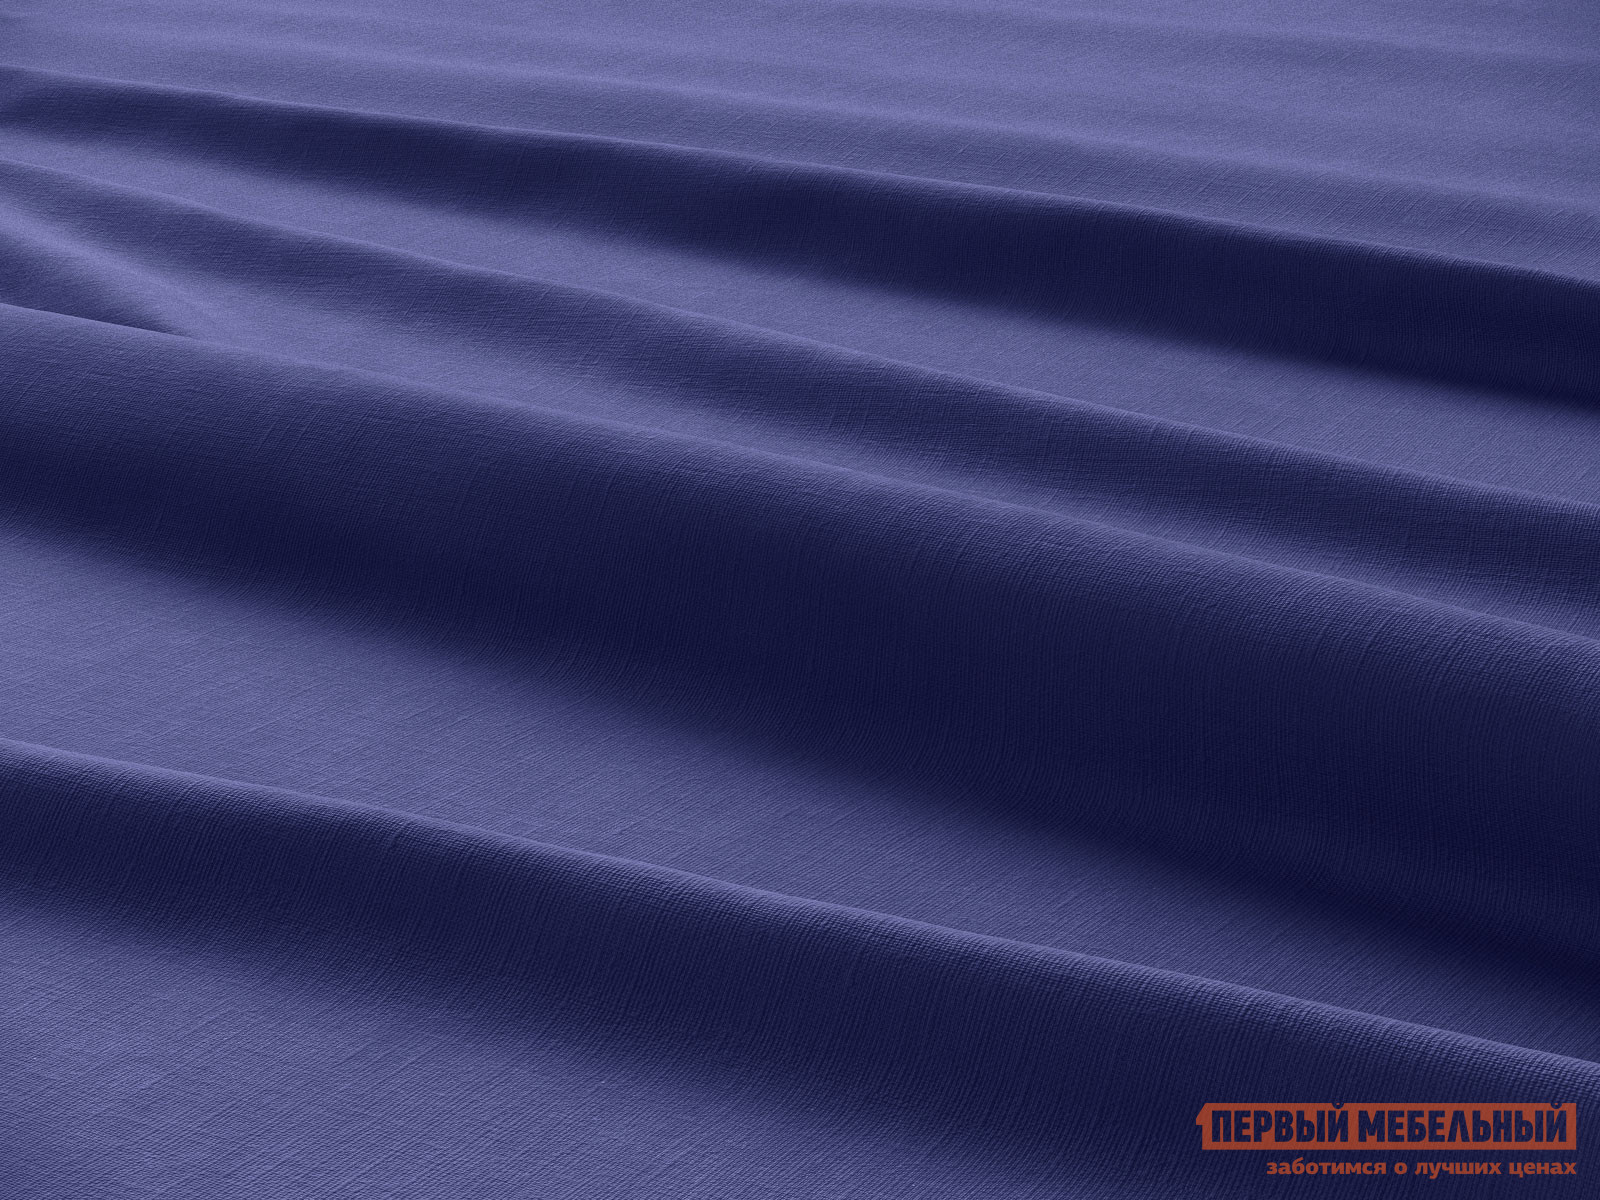 Простыня  Индиго Синий, сатин, 1400 Х 2000 мм